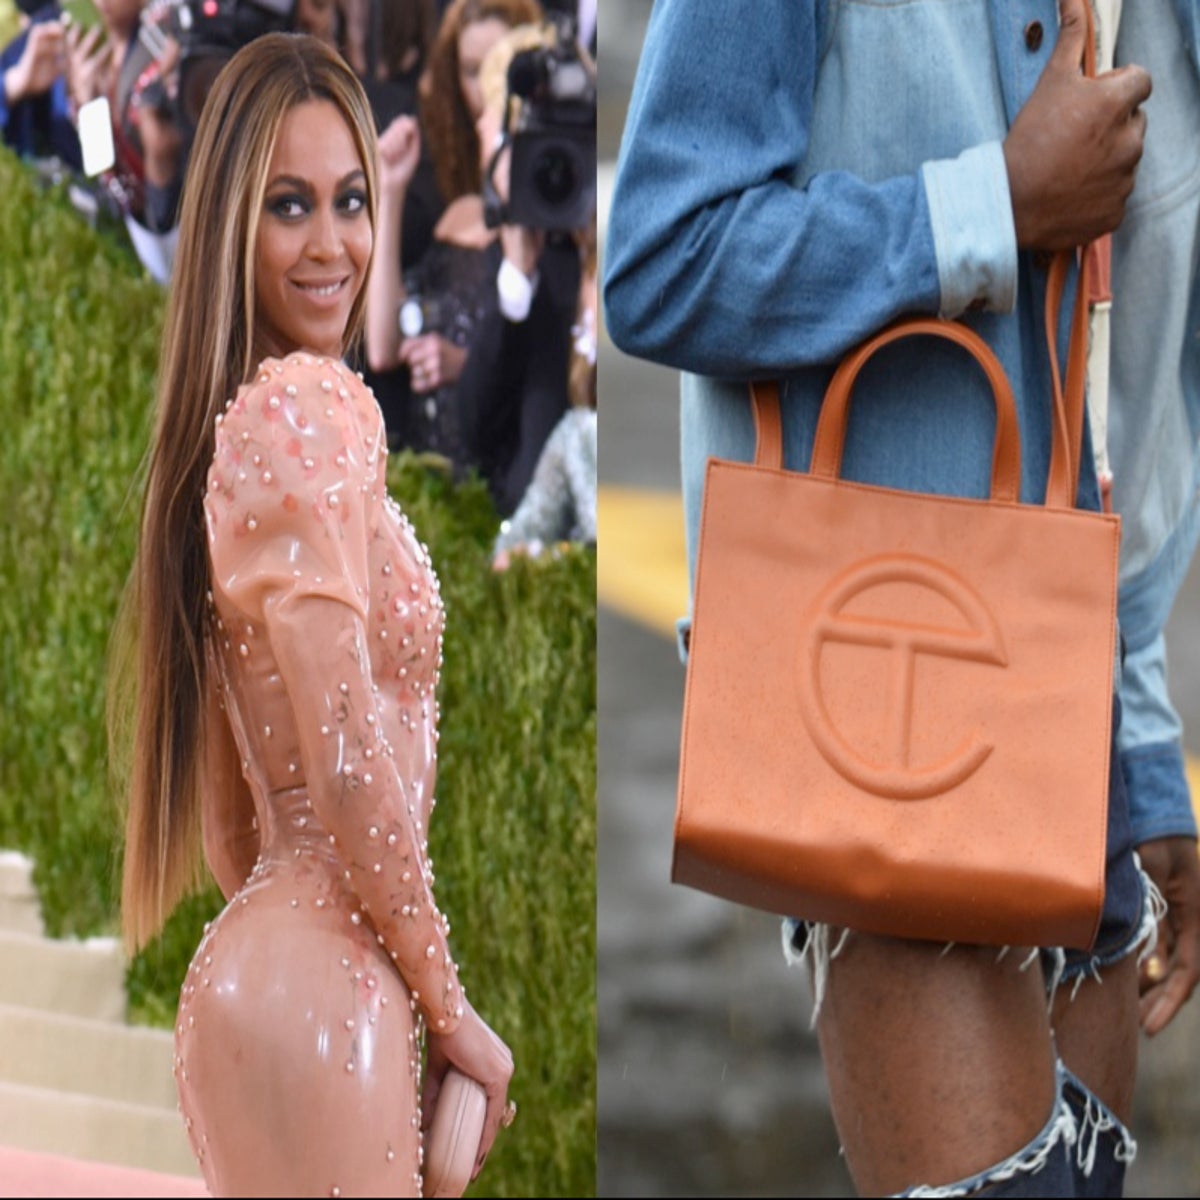 Why Beyonce White Telfar Bag Is Trending On Twitter